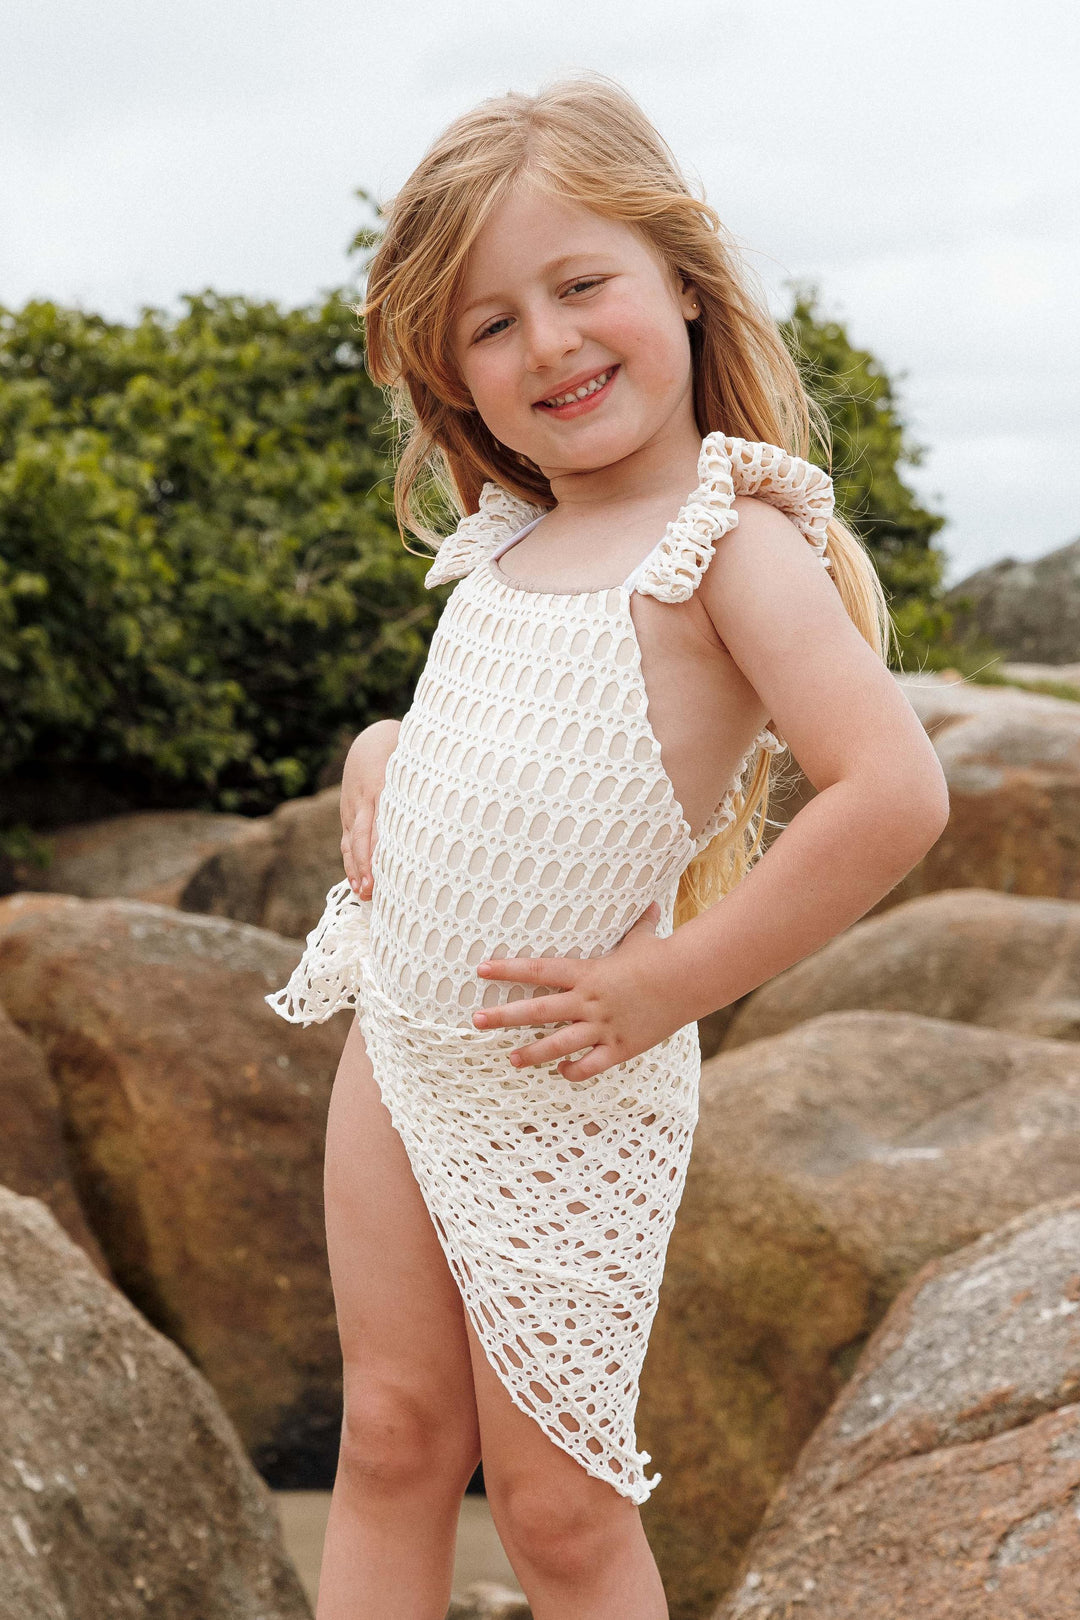 Lenco de Renda vestido como mini Pareo Infantil com maiozinho combinando da Lili Sampedro